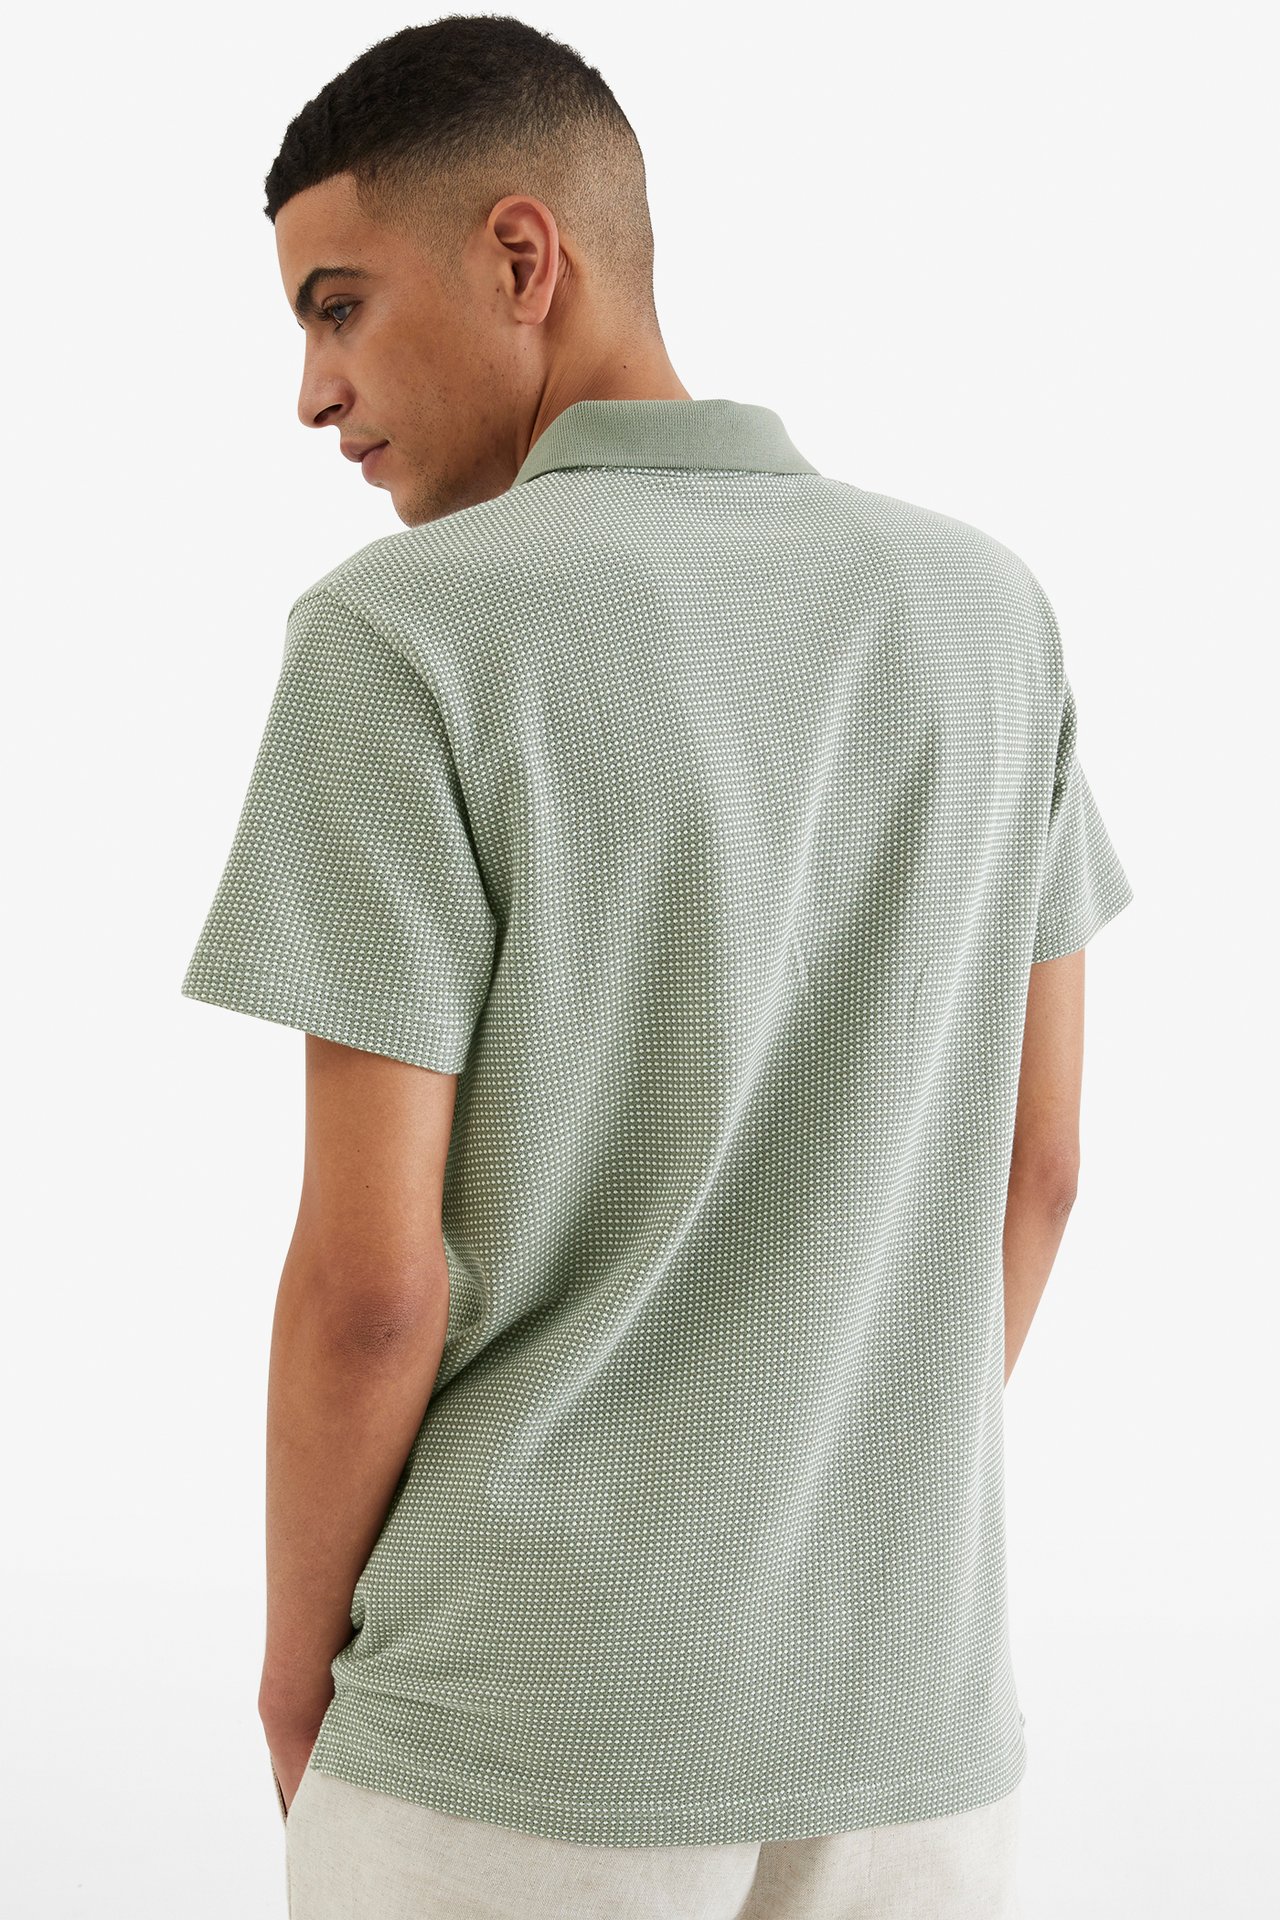 Tennisskjorte - Mørkegrønn - 189cm / Storlek: M - 3